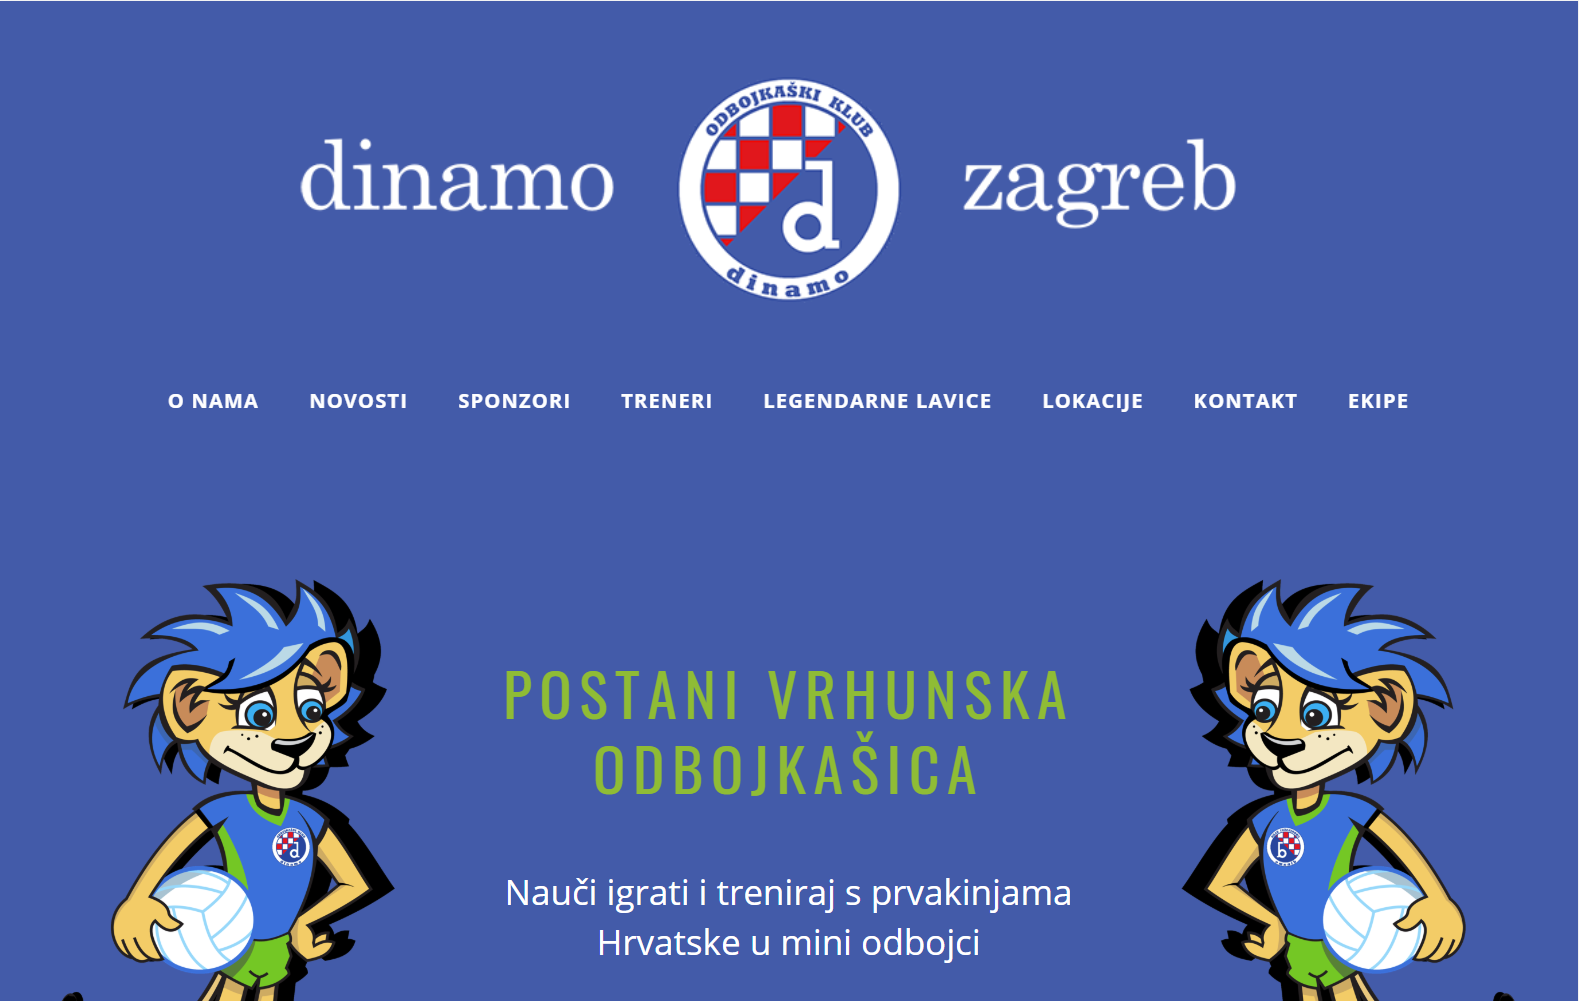 OK Dinamo